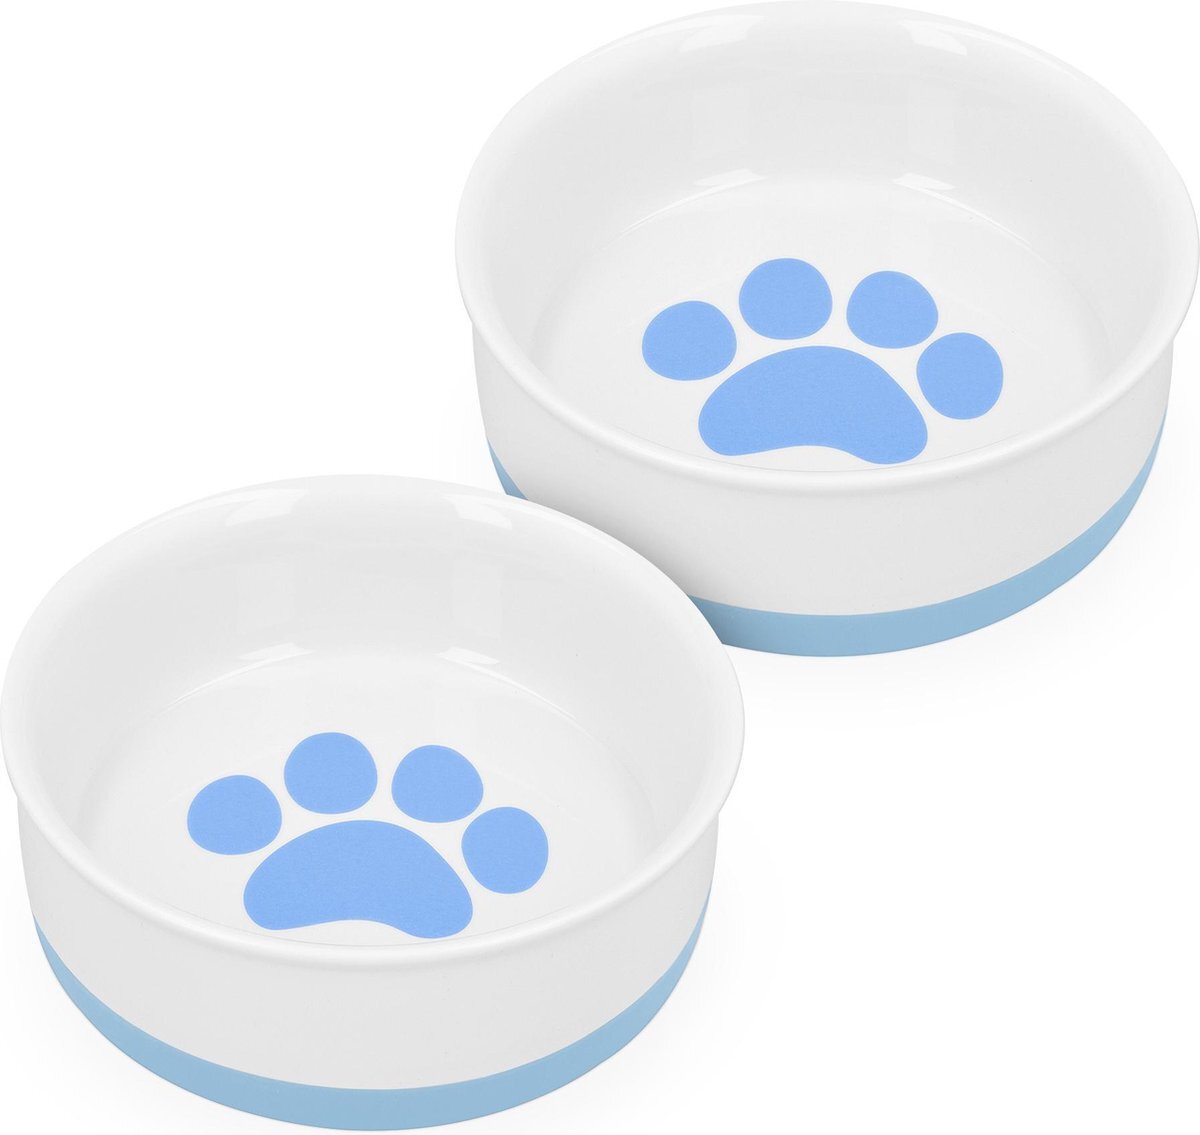 Navaris set van 2 voerbakjes - Voor hond en kat - Etensbak en waterbak van porselein - Met siliconen antislip onderzijde - Wit/Blauw blauw